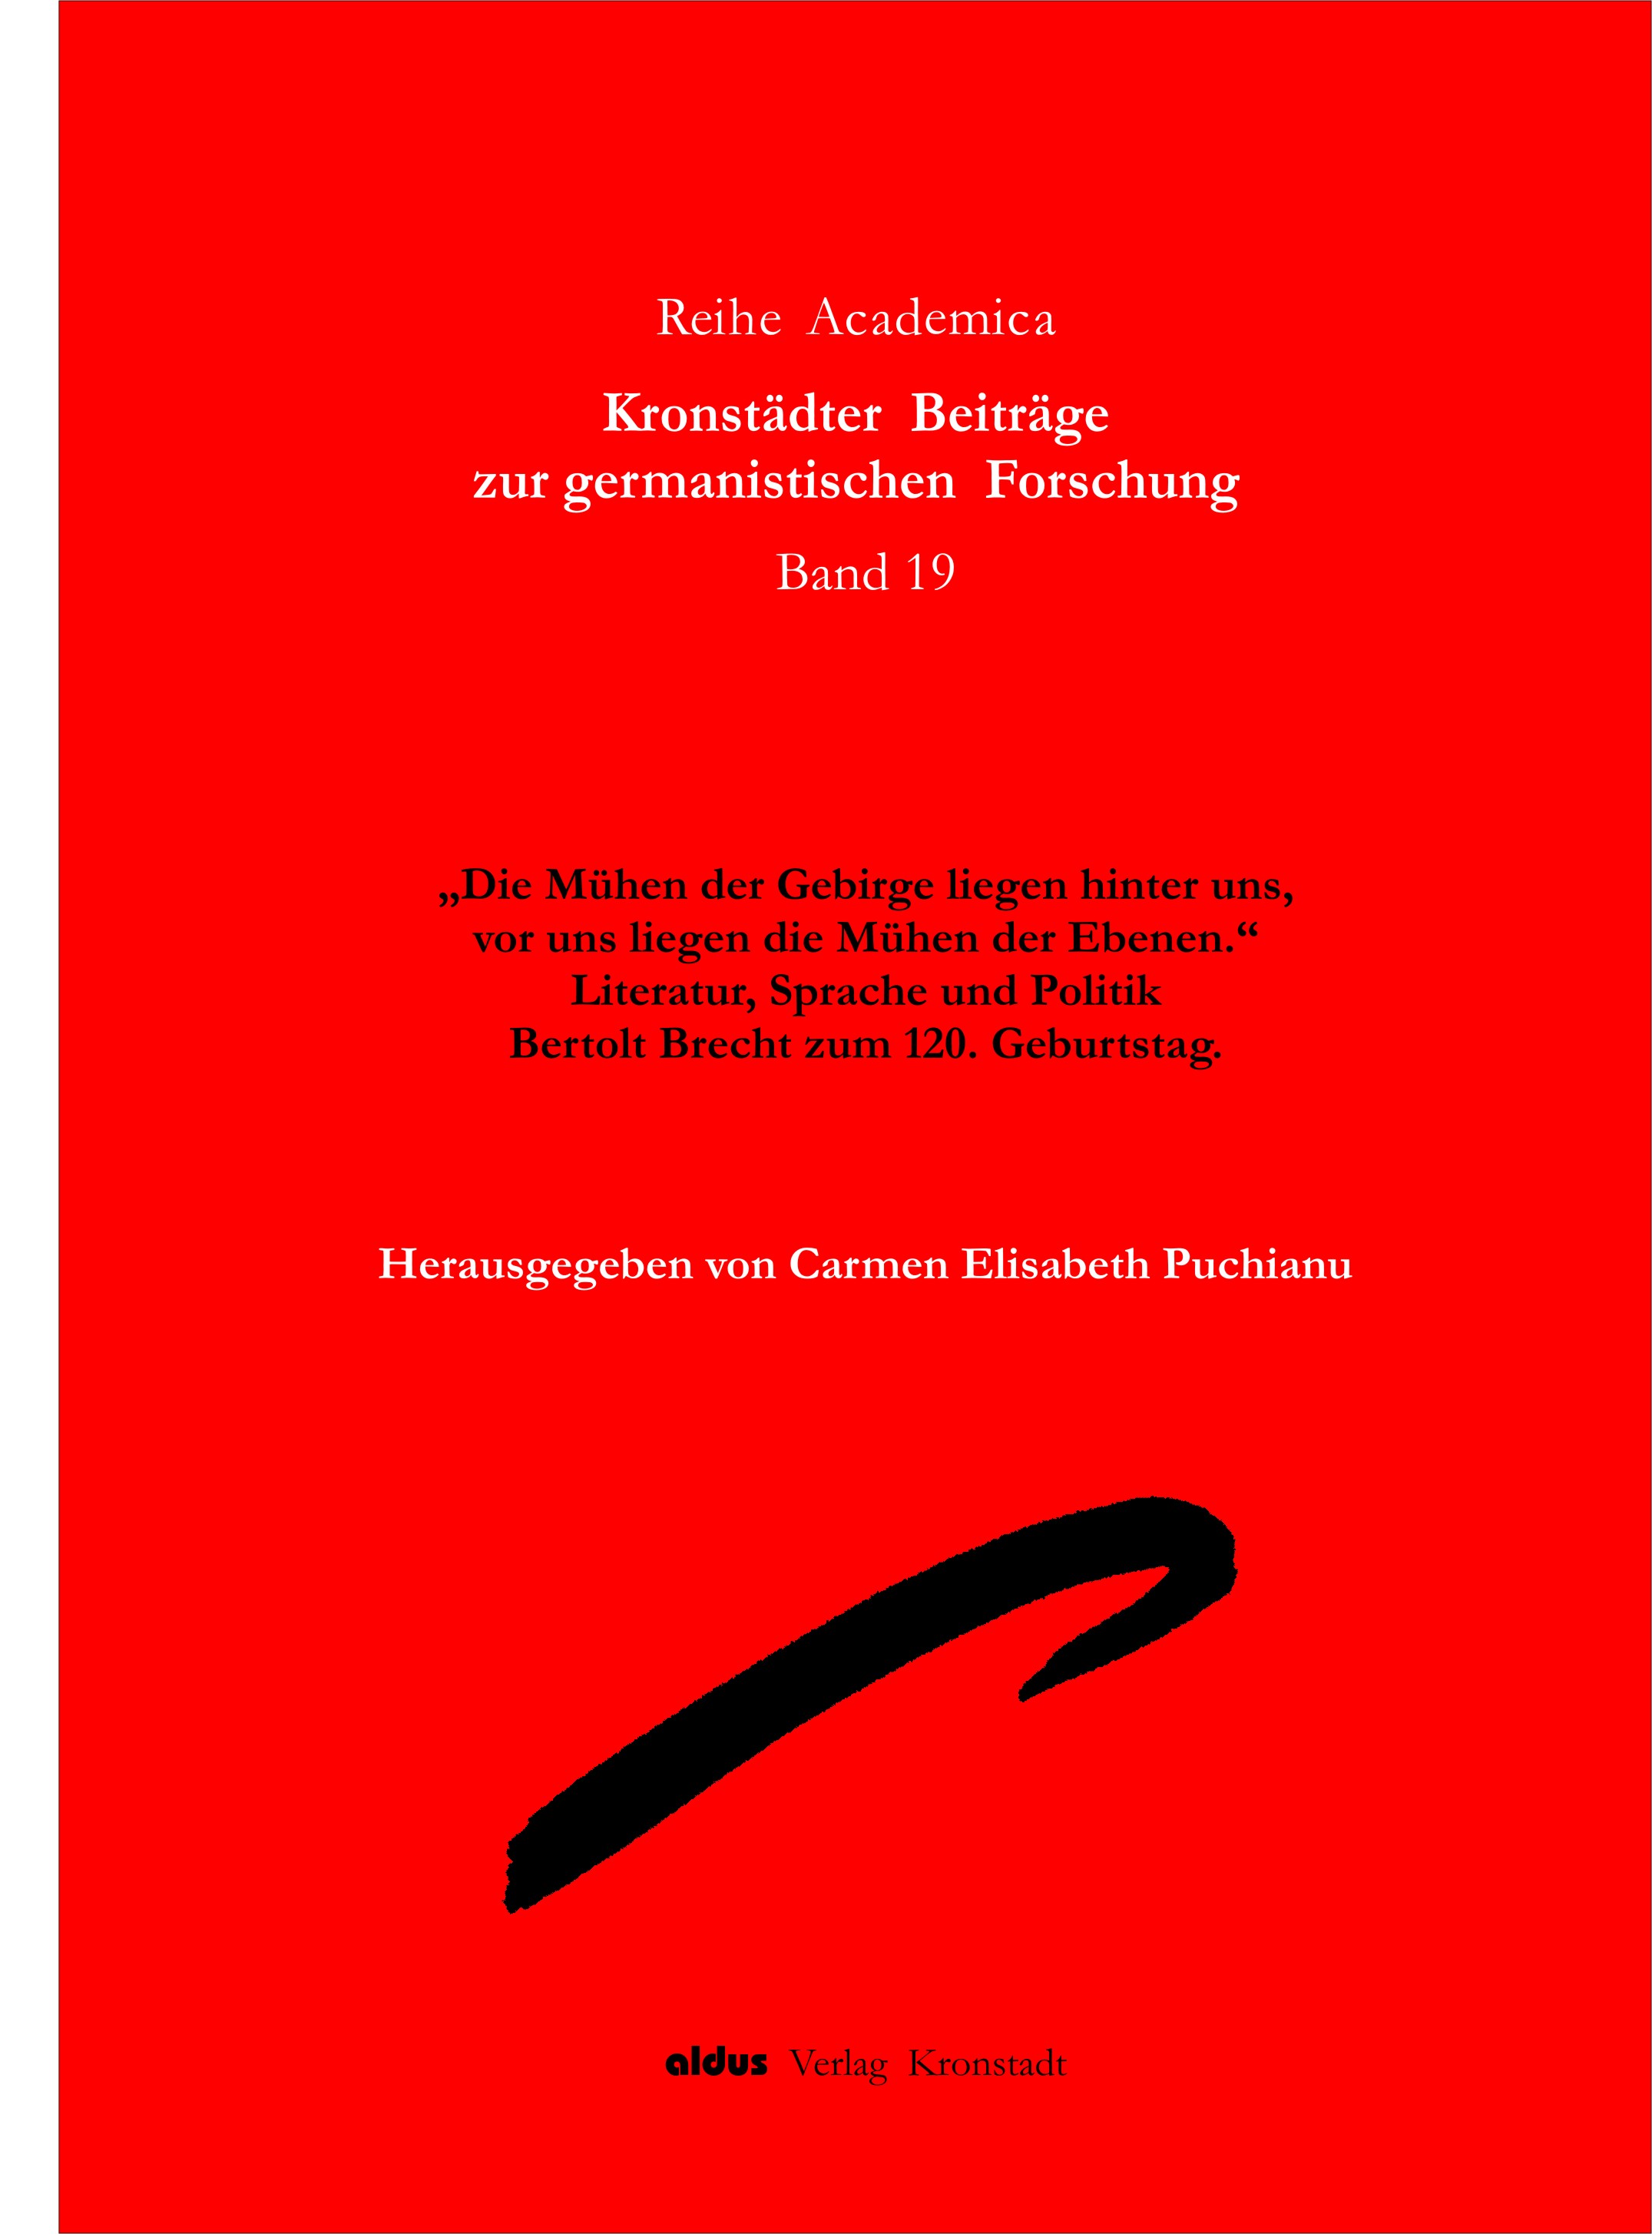 BRASOV YEARBOOK OF GERMAN STUDIES